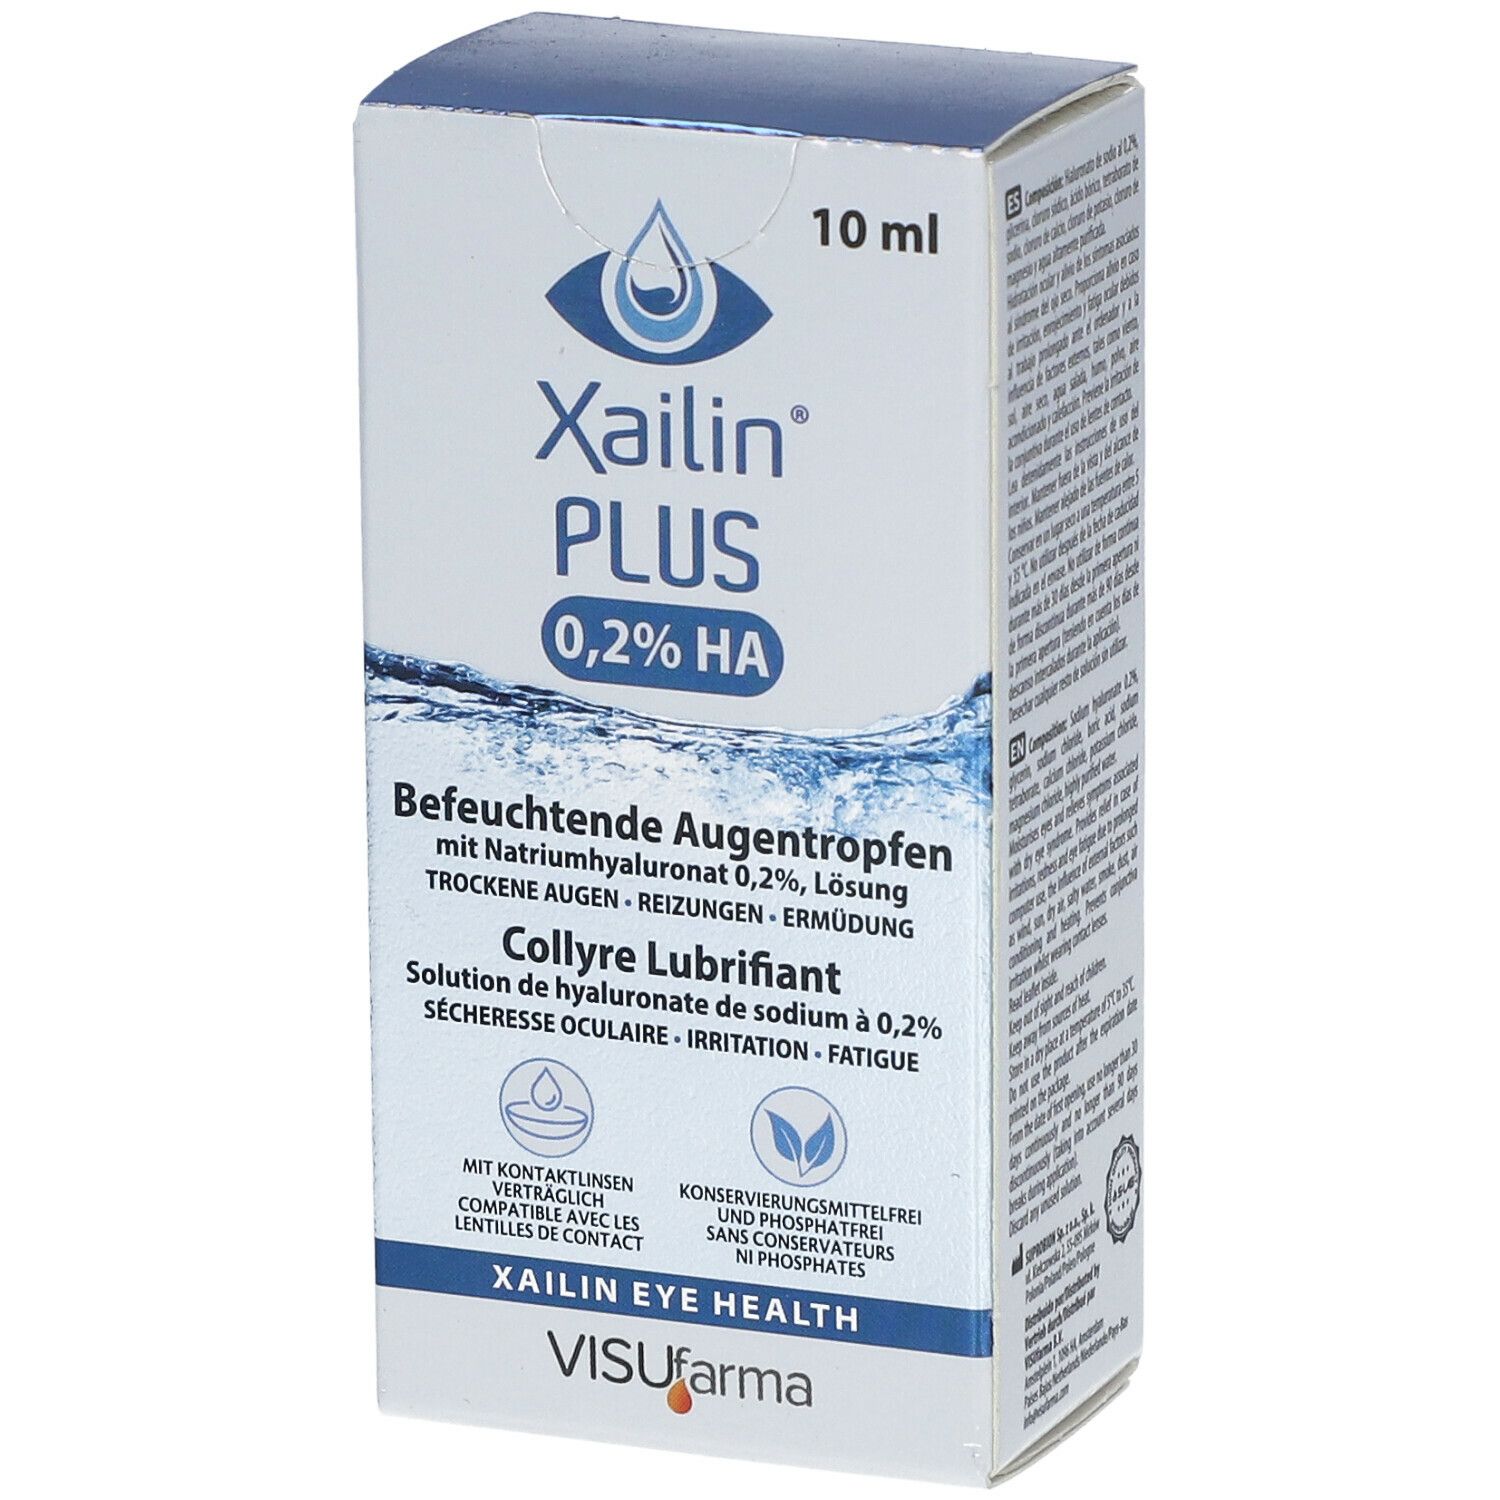 Xailin® PLUS 0,2% HA Befeuchtende Augentropfen